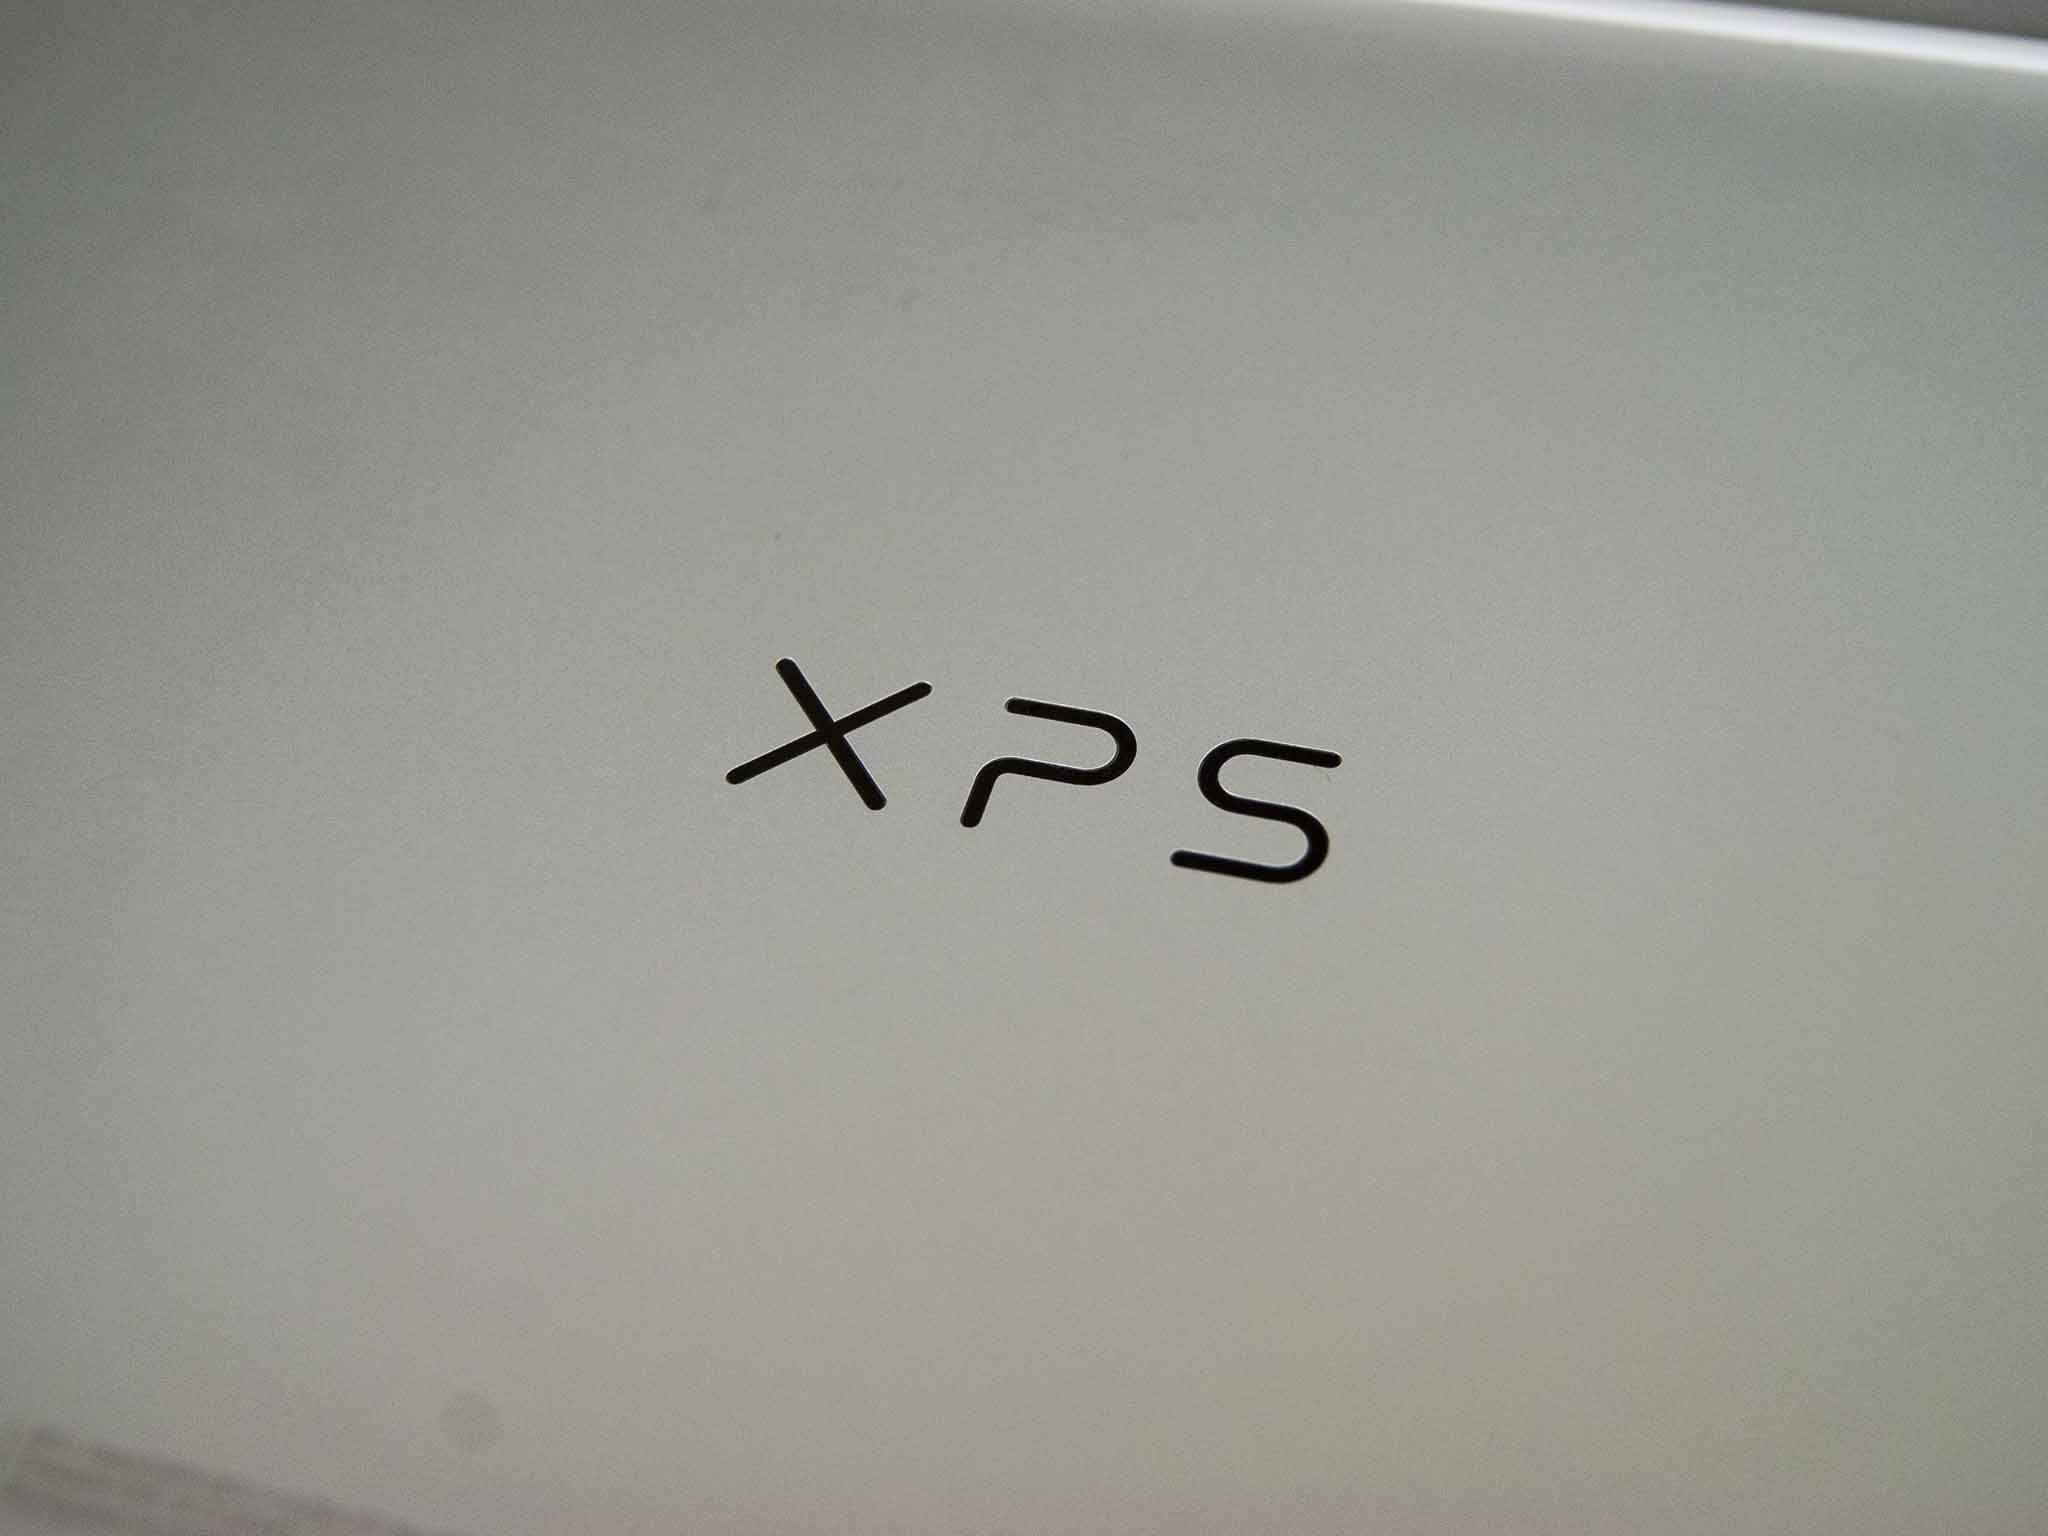 dell-xps-13-9300-logo-01.jpg